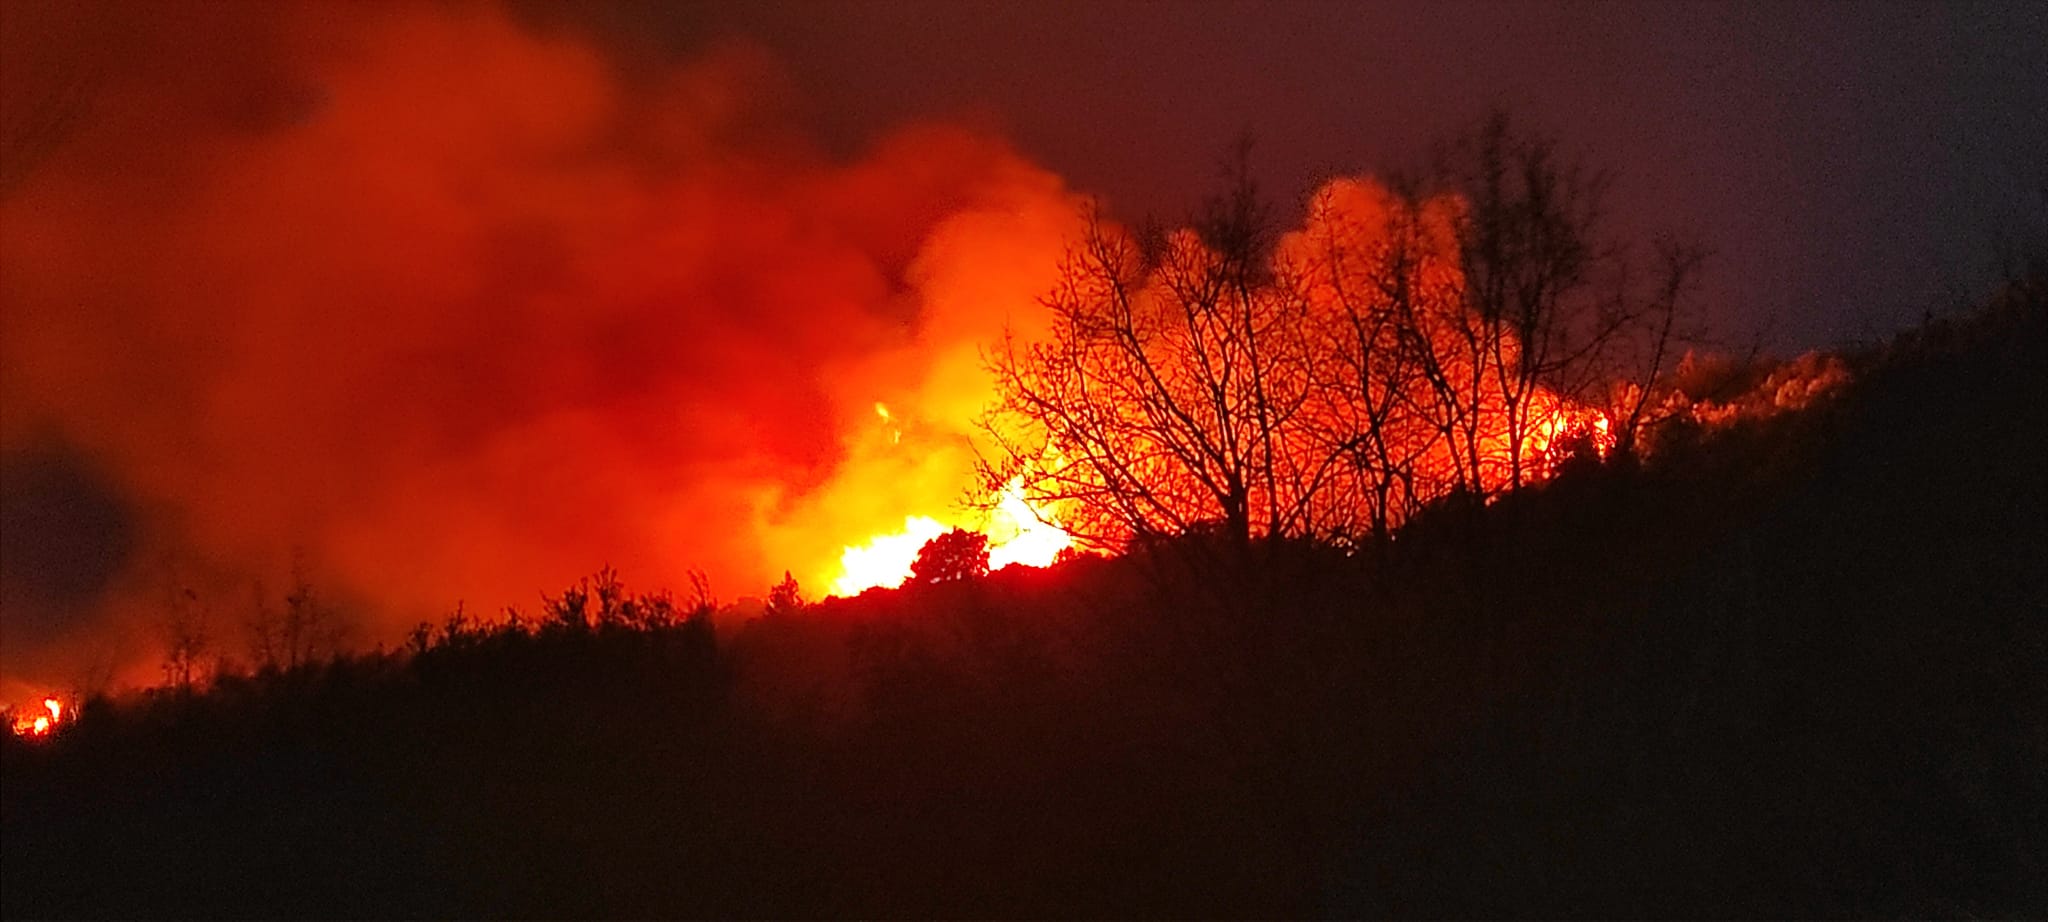 Ηλεία: Φωτιά έχει ξεσπάσει στο Καπελέτο – Οι φλόγες είναι ορατές από την Αχαΐα